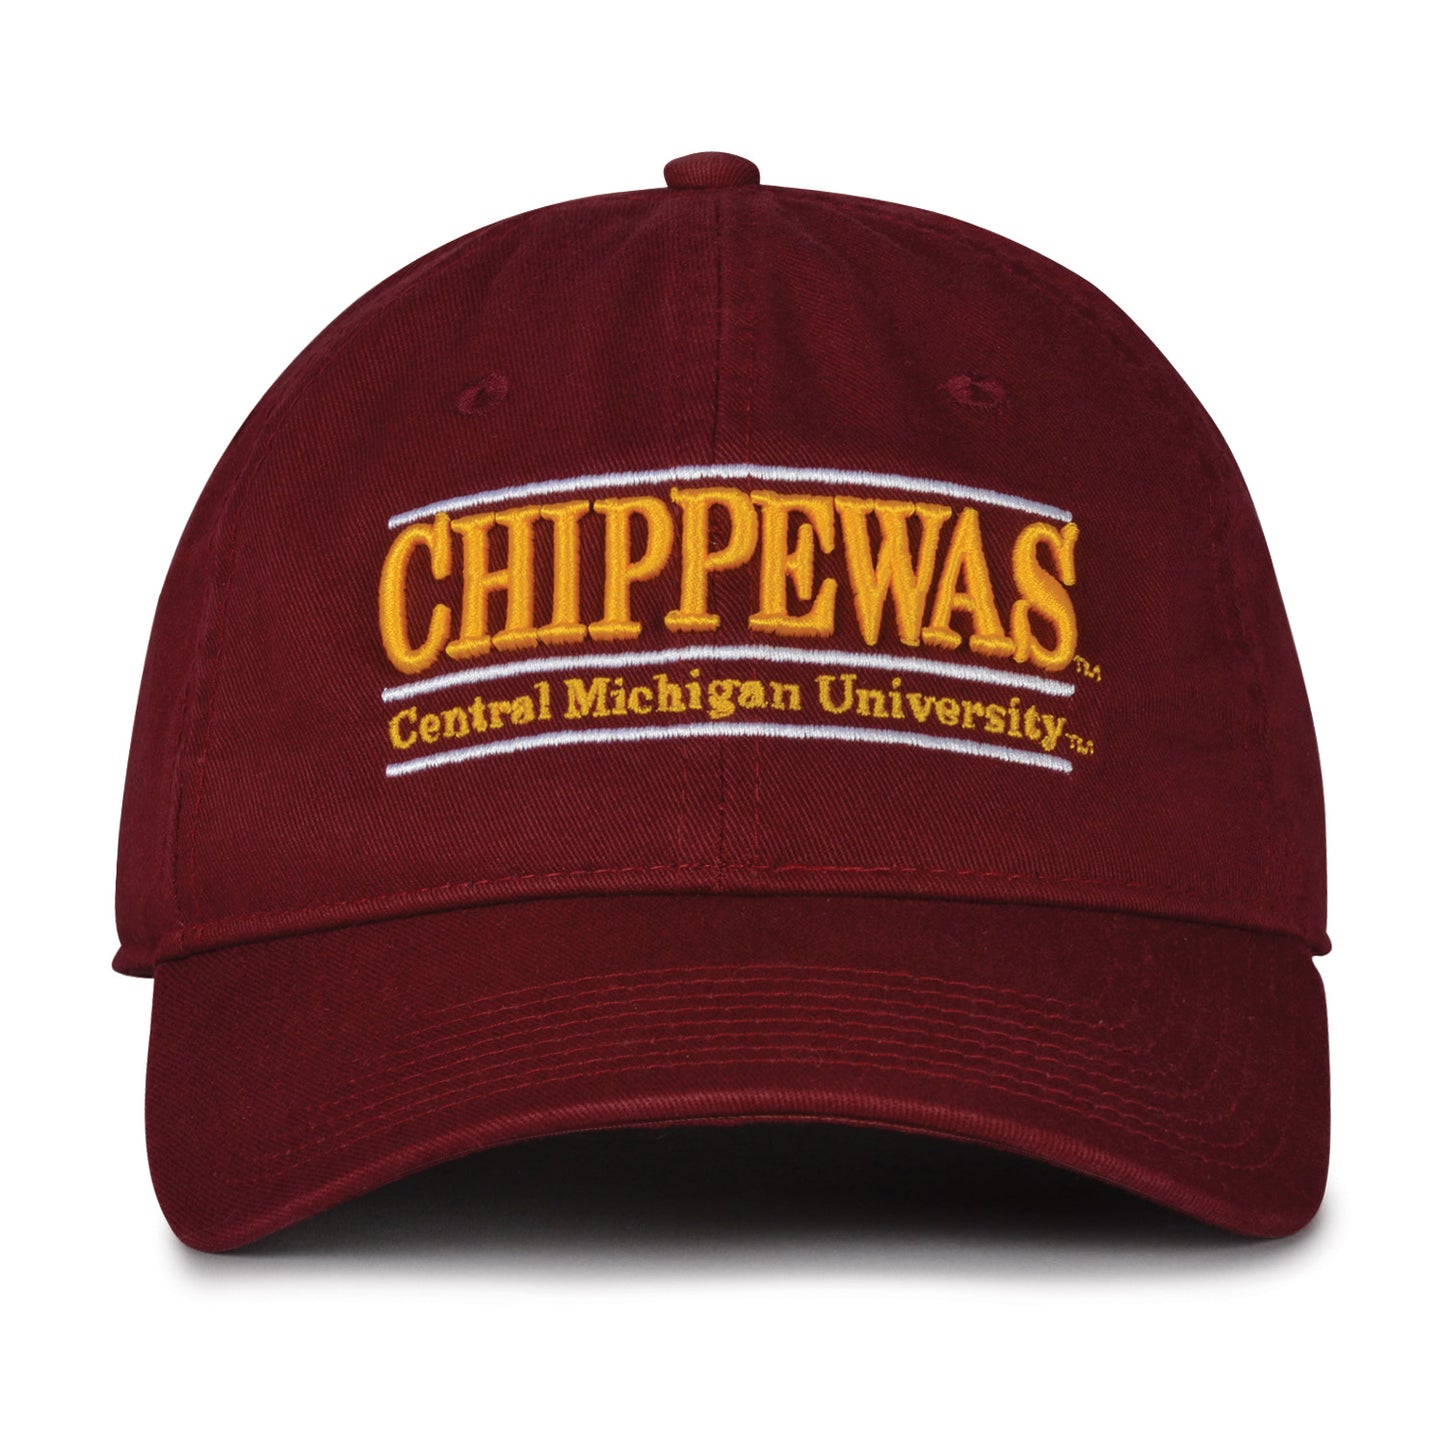 CHIPPEWAS' BAR DESIGN